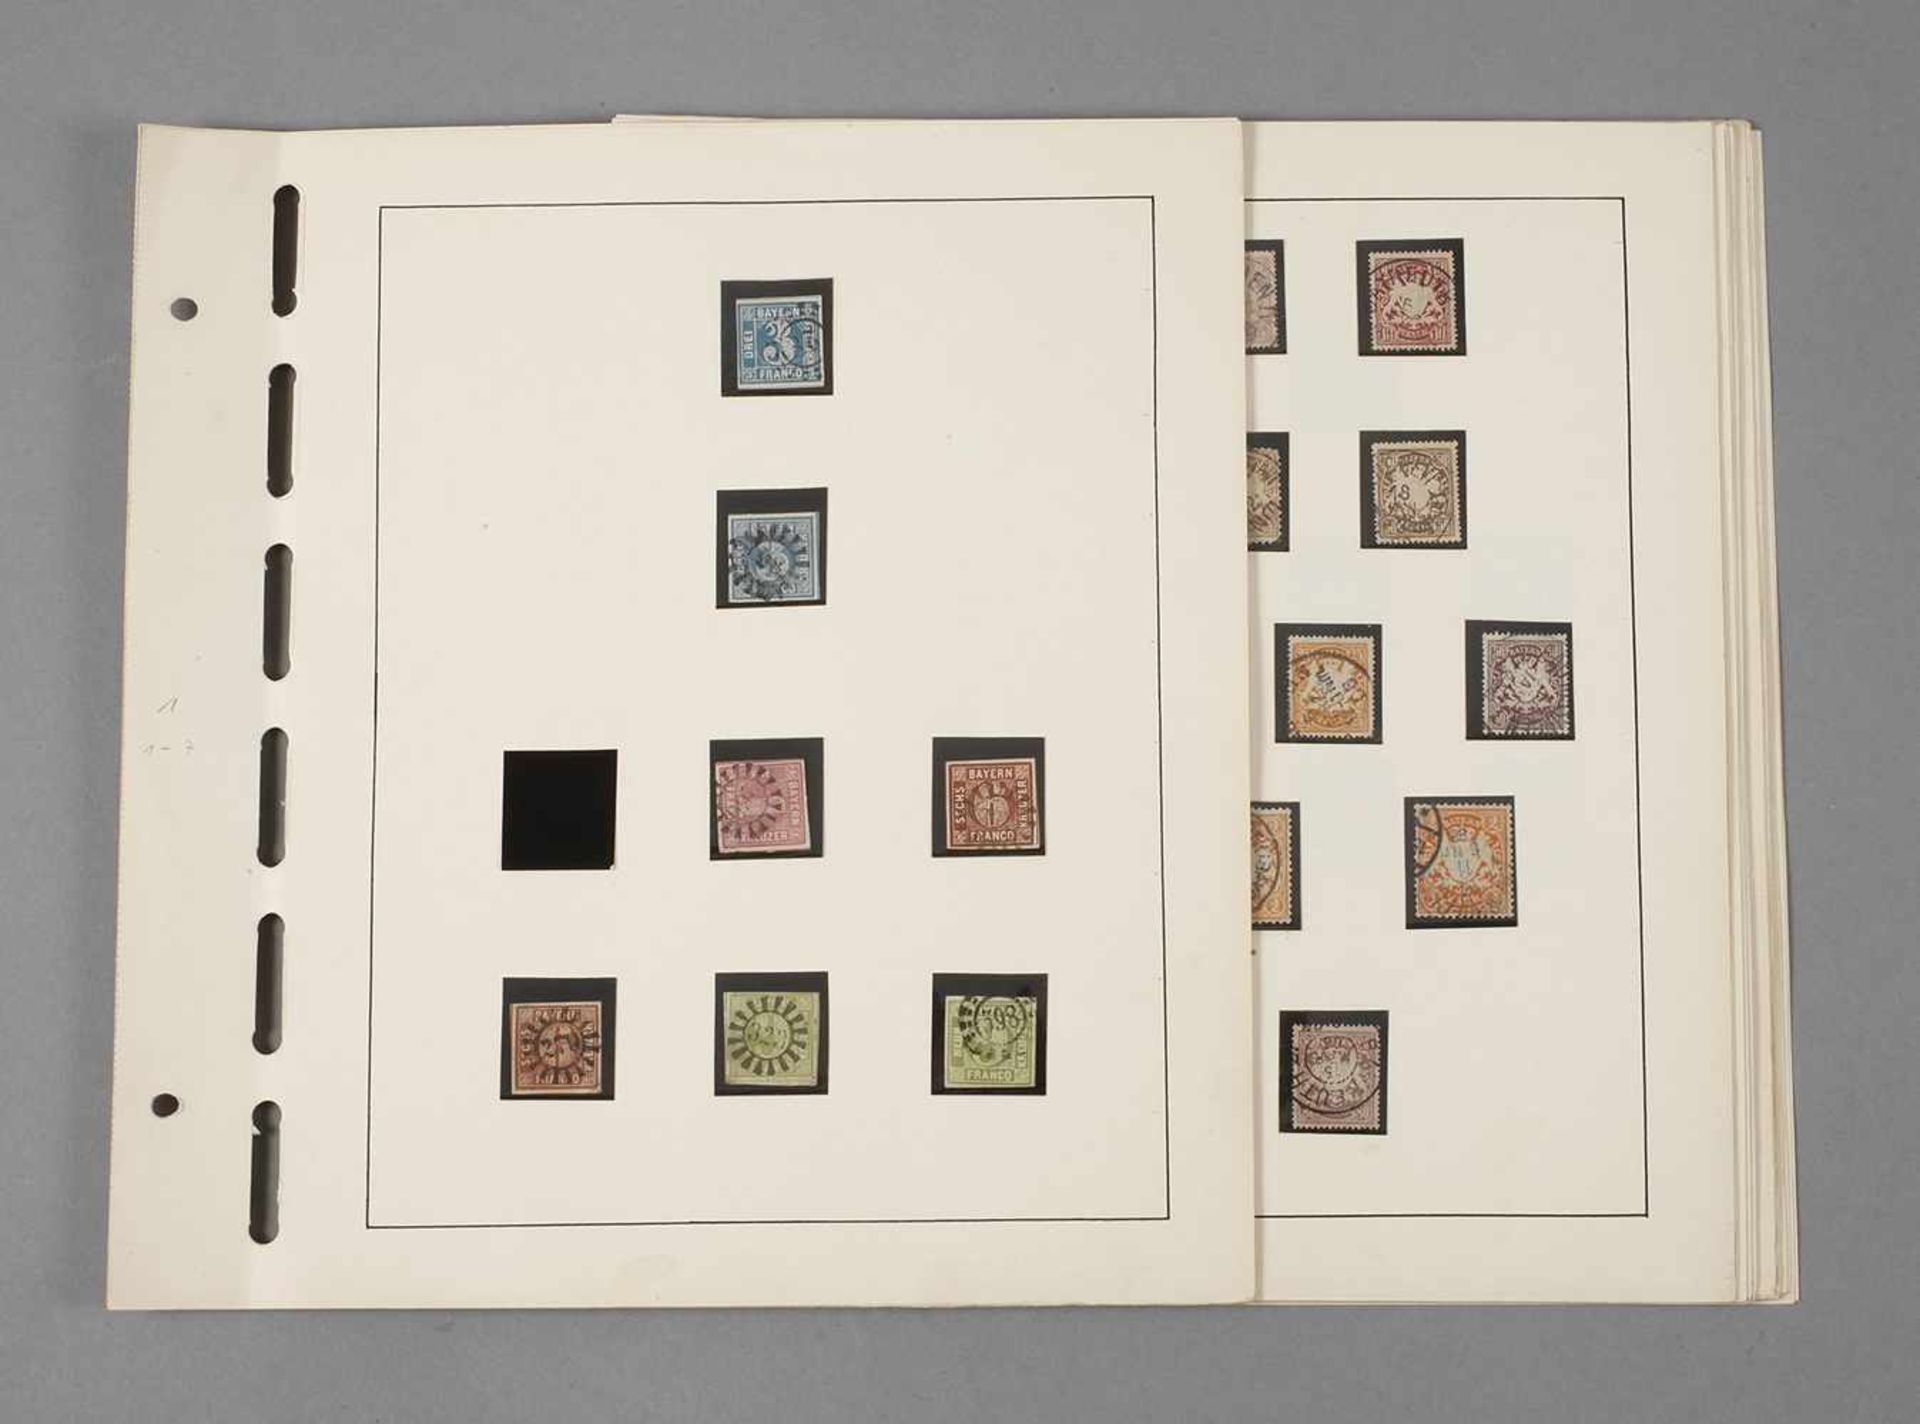 Briefmarken Altbayern ab 1849Sammlung AD mit anfänglichen Lücken auf 24 Albenblättern ab 1849 bis